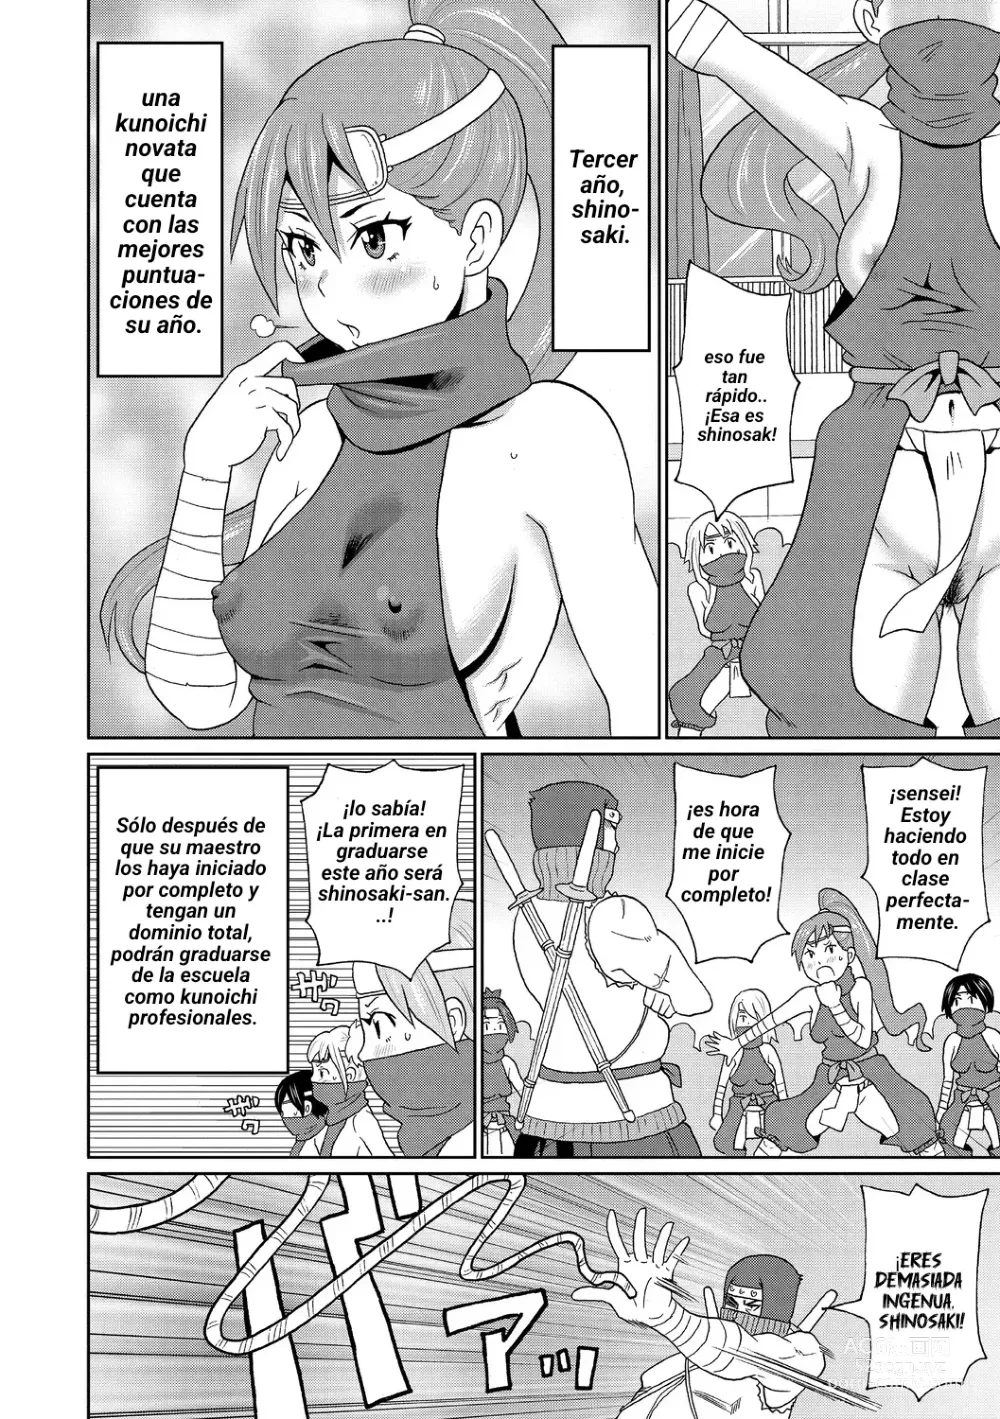 Page 4 of manga Shinmai Kunoichi Shinozaki-san.